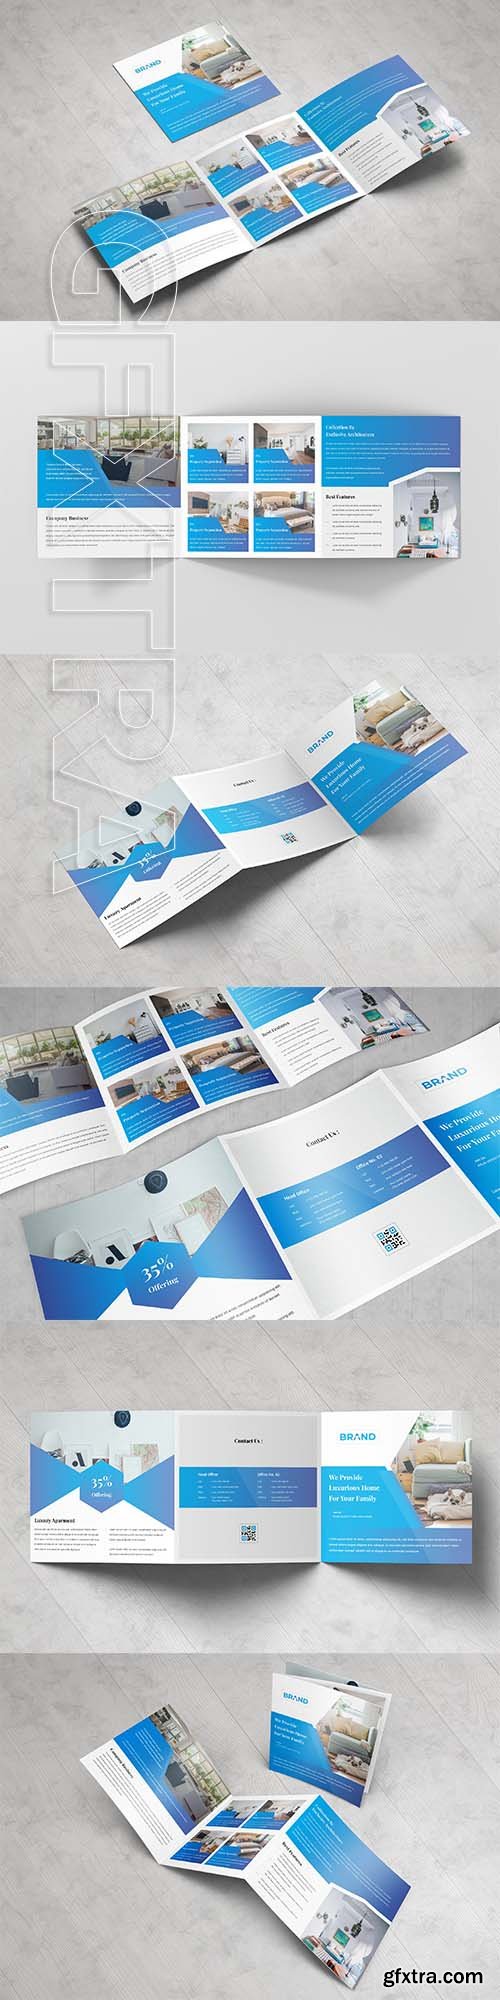 CreativeMarket - Real Estate Square Tri fold Brochure 3378790